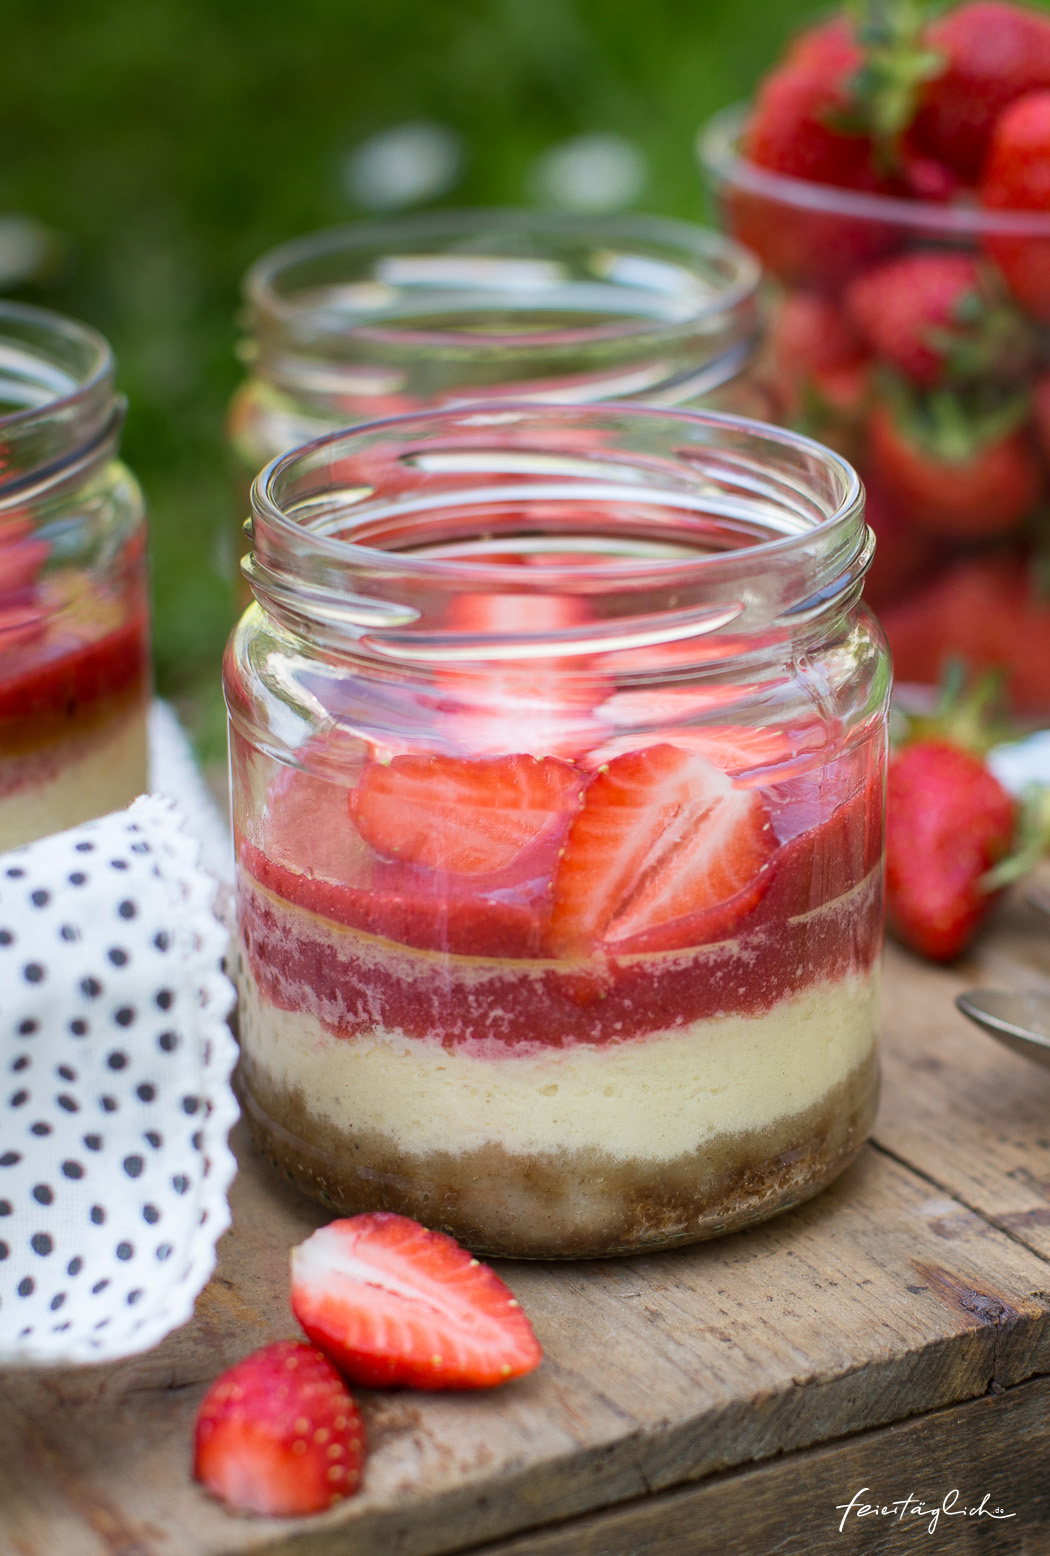 Picknickrezept: Kleine Erdbeer-Cheesecakes im Glas mit knusprigem Boden, Erdbeerpüree und frischen Erdbeeren, Meal-Prep-Dessert